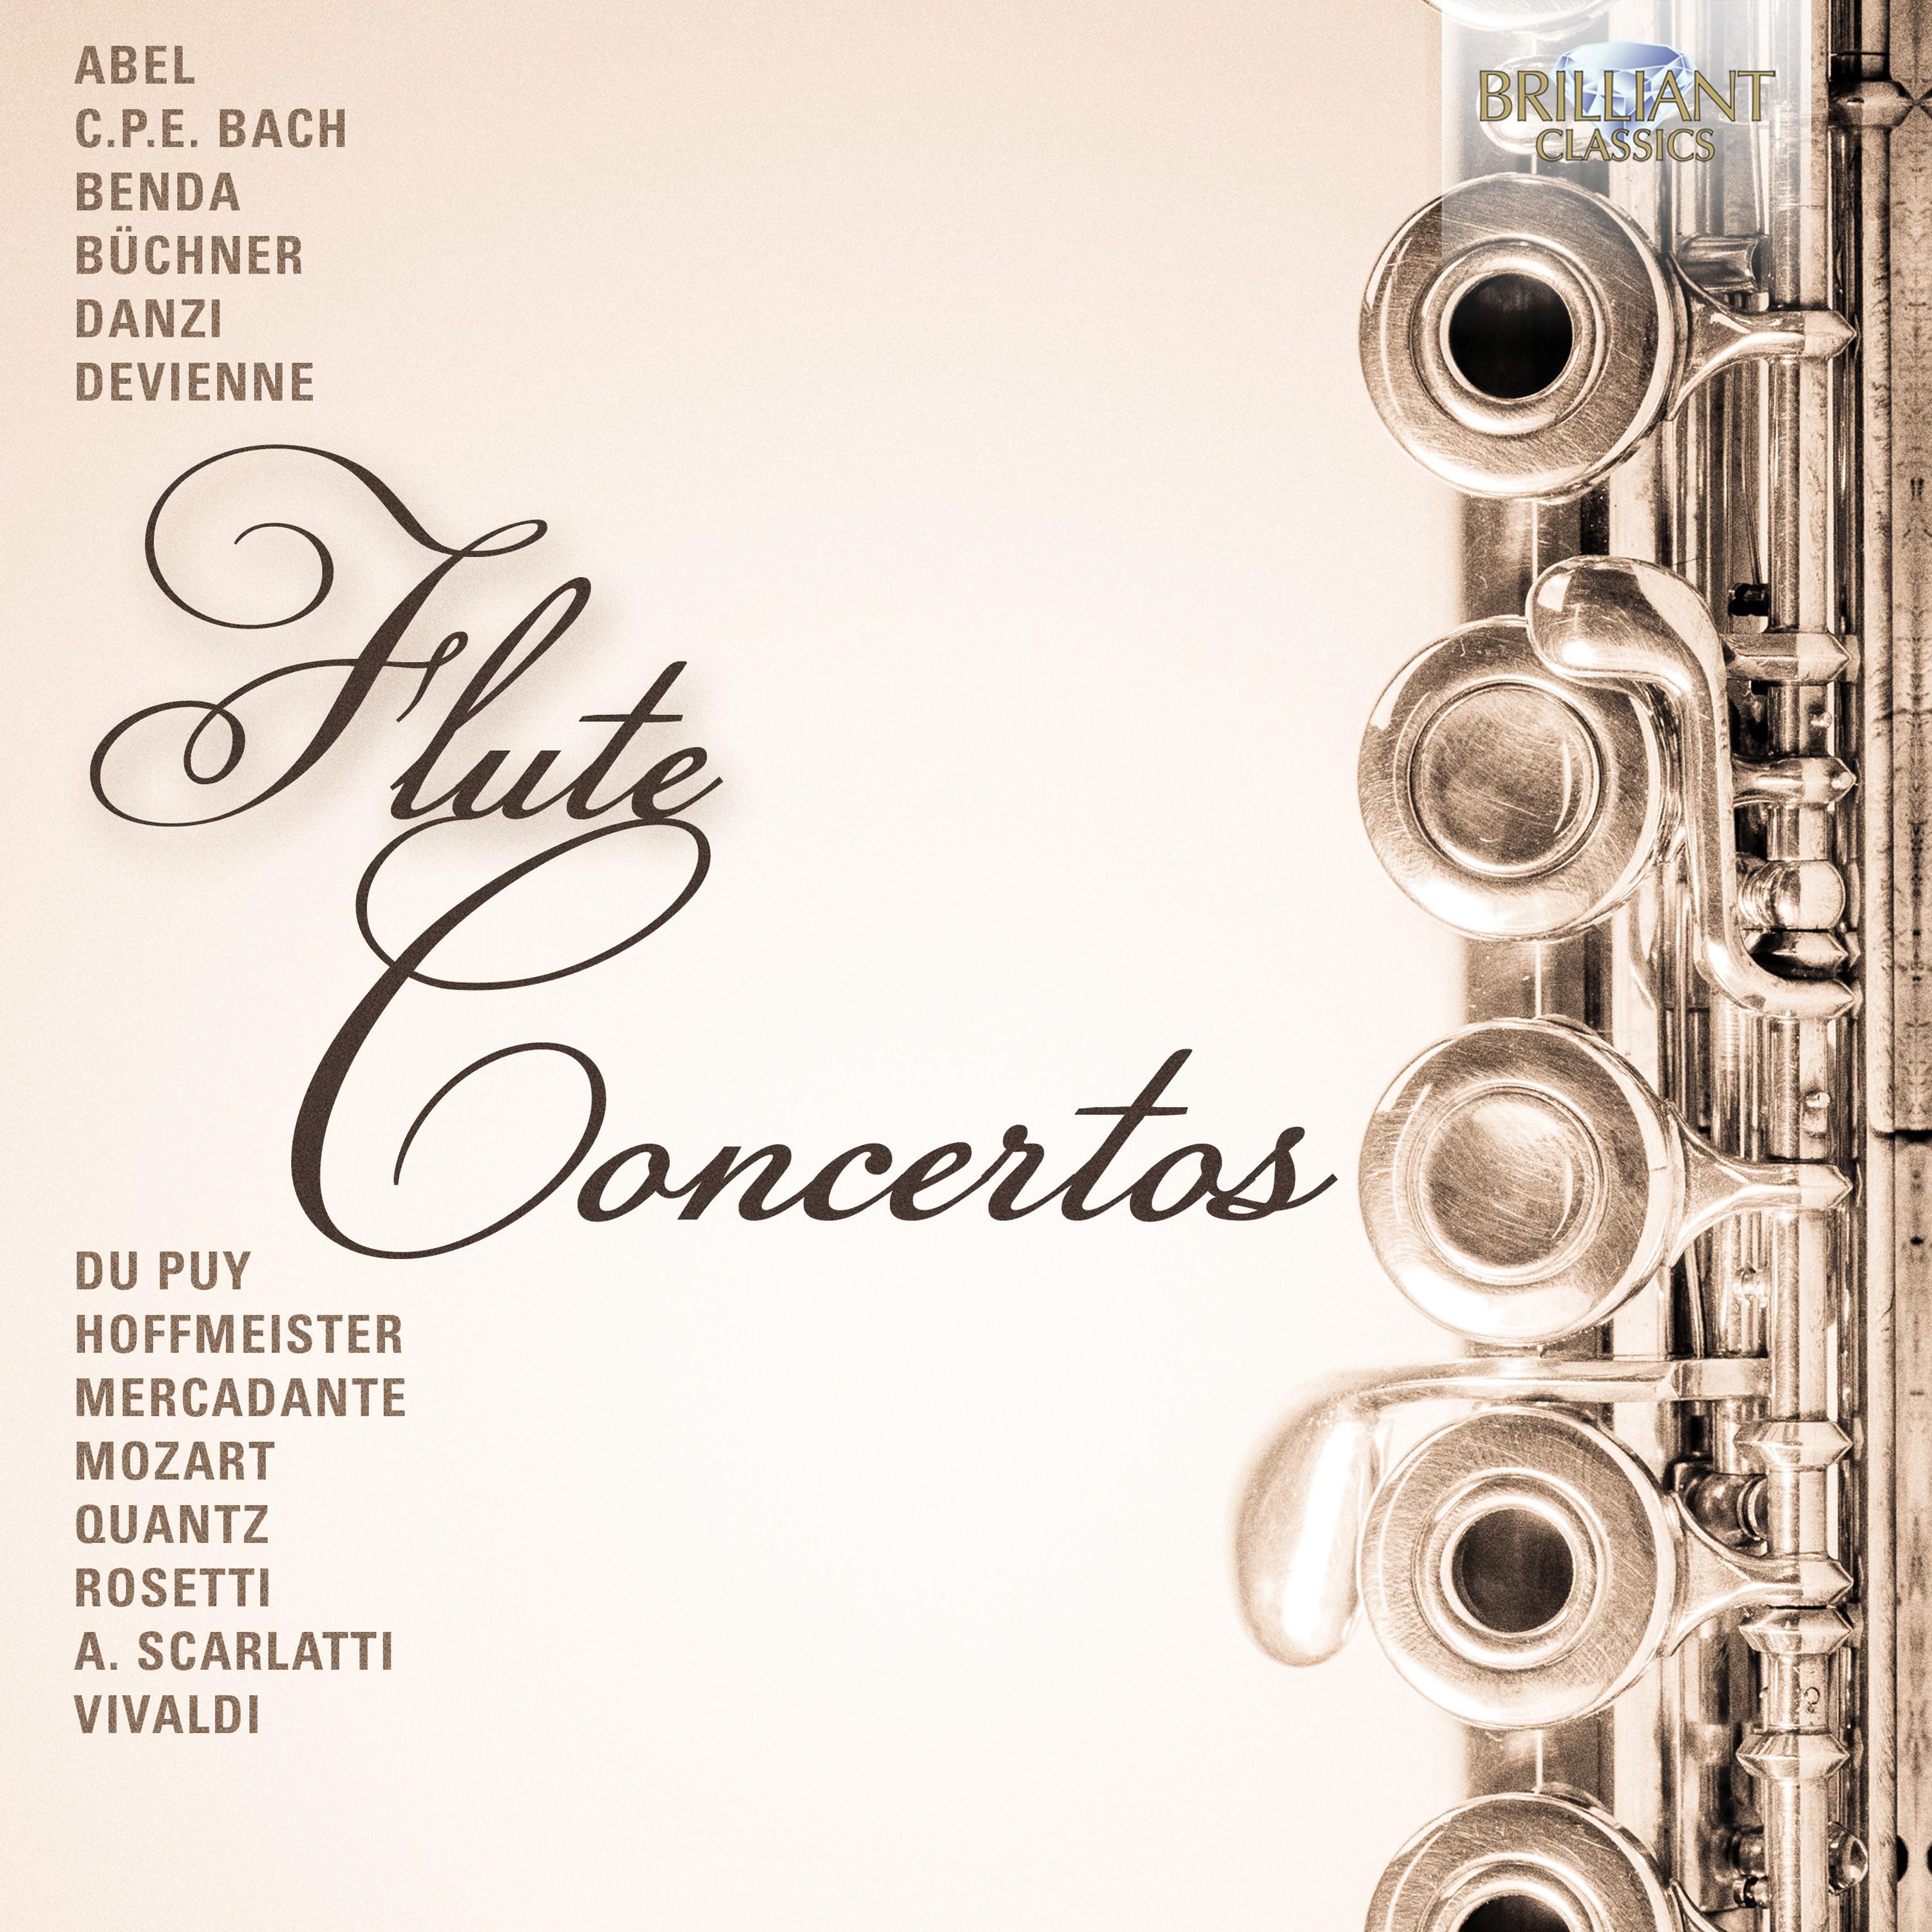 Flute Concerto in D Major, K. 314: III. Allegro